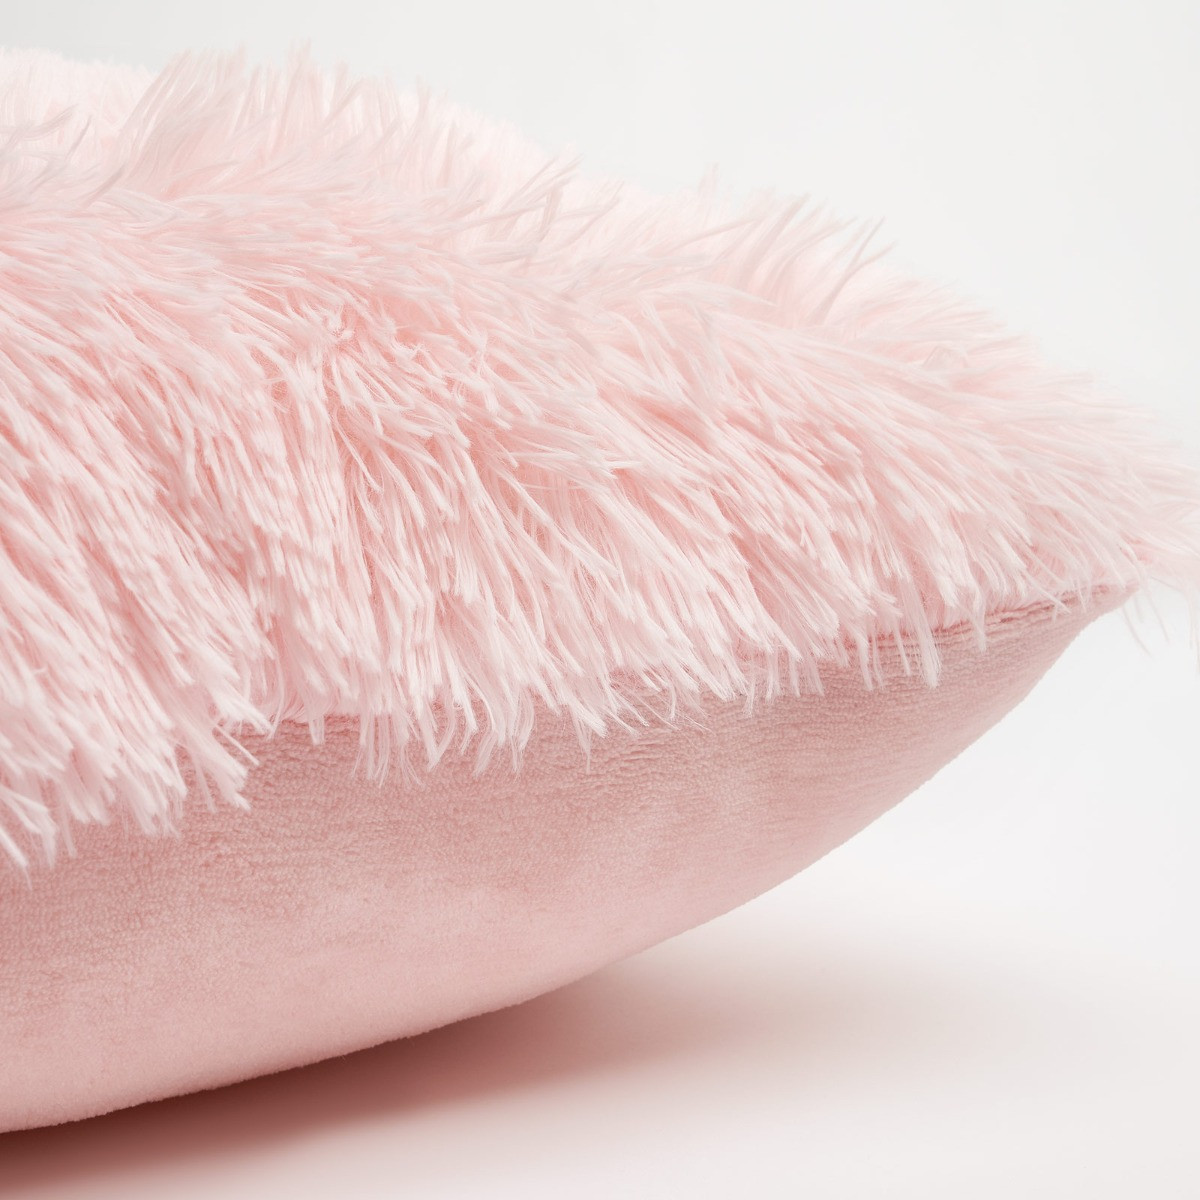 Sienna Fluffy Cushion Covers 55 x 55cm - Blush>